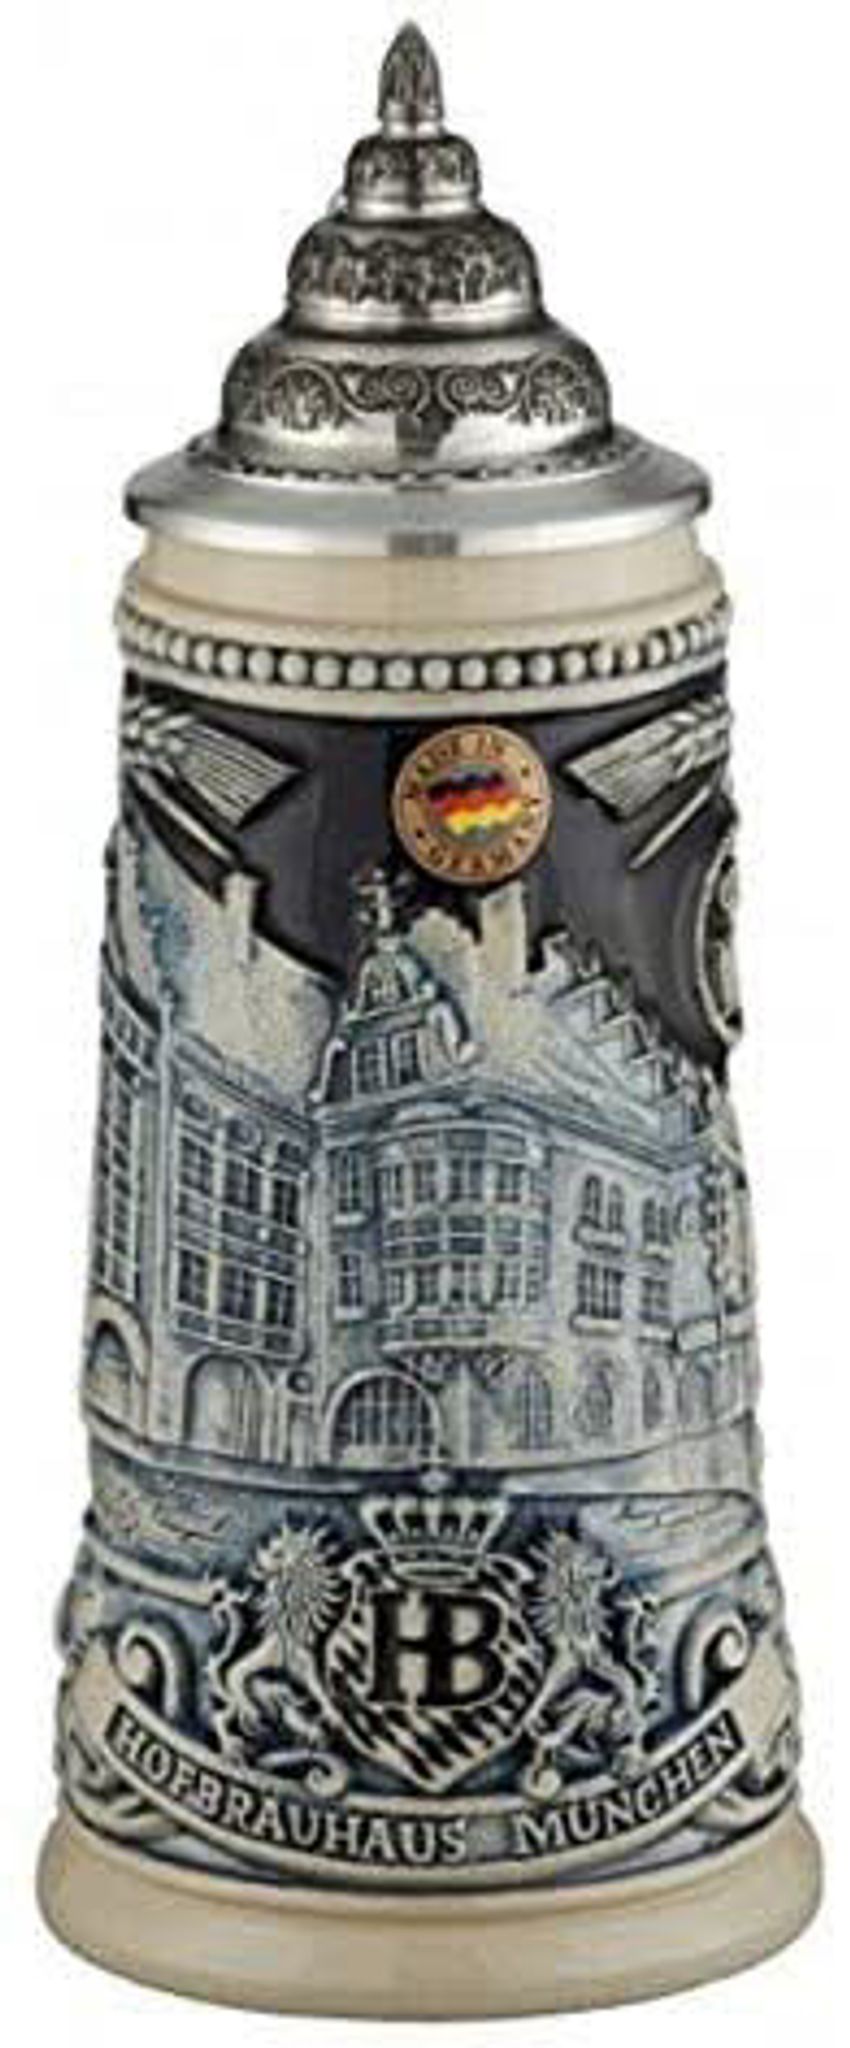 HB beer mug 0,25l blue authentic german beer mug